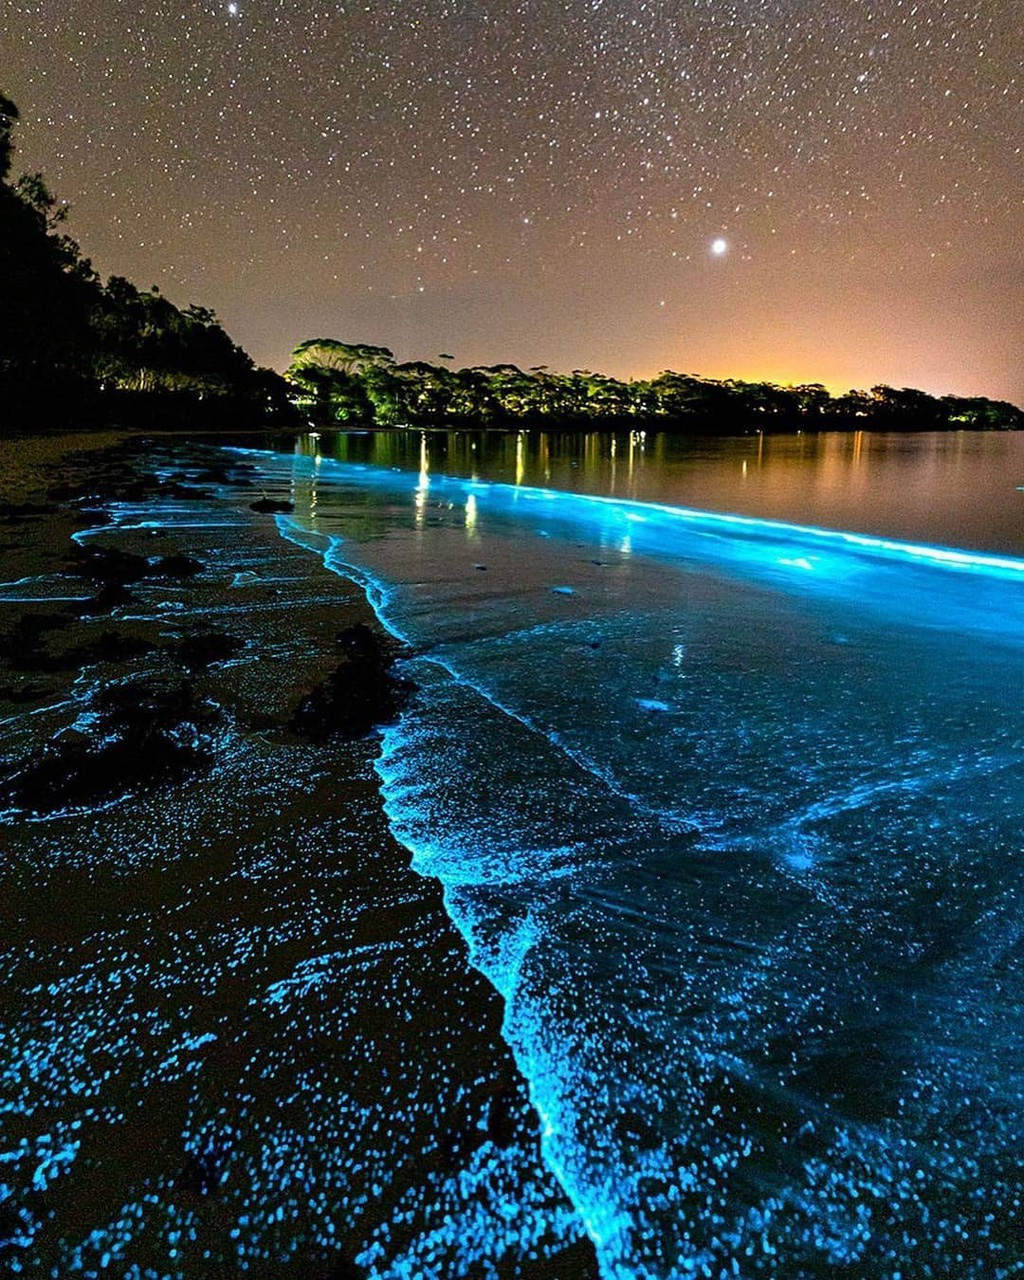 Tảo phát quang bãi biển đêm là một hiện tượng tuyệt đẹp, càng thêm phần kỳ diệu khiến cho ai một lần được chiêm ngưỡng thì không thể quên được. Hãy đón những khoảnh khắc tuyệt vời đó qua hình ảnh cực kì sống động và chân thực.